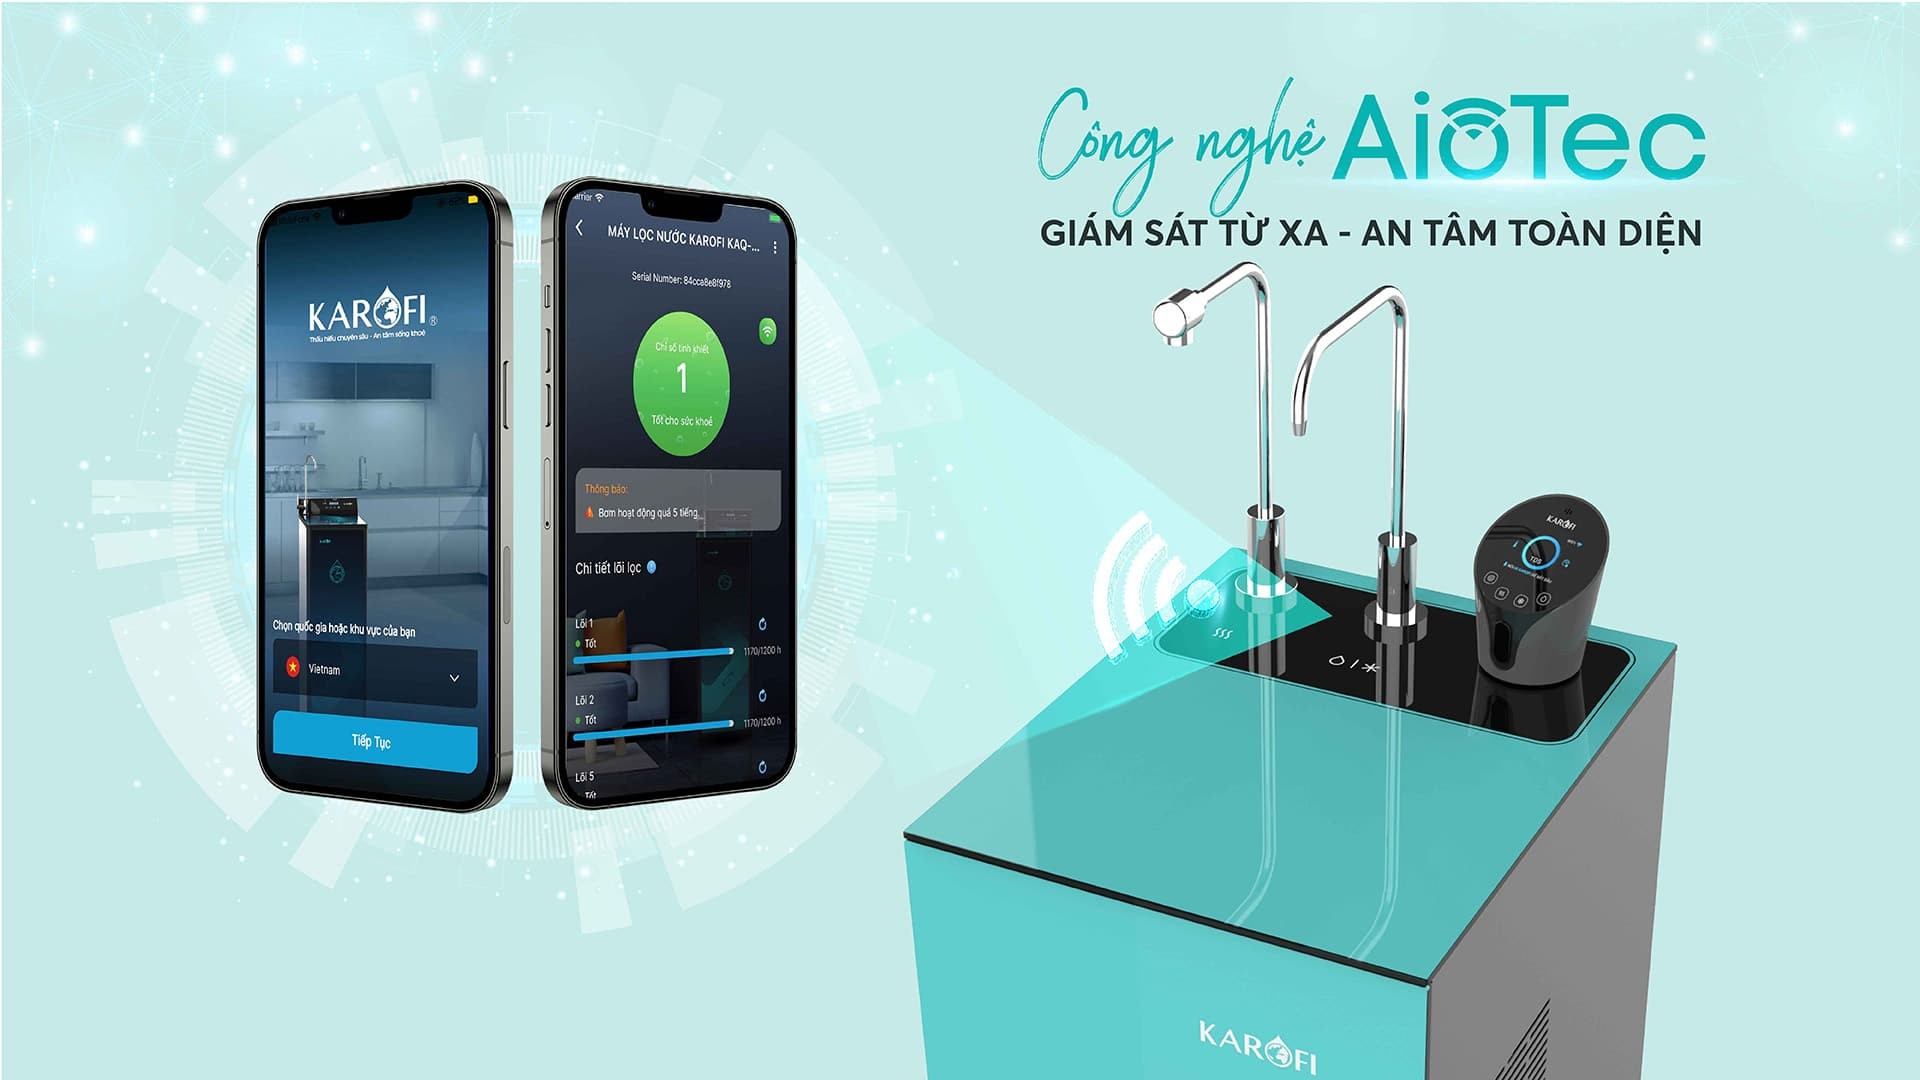 Công nghệ AIOTEC - Điều khiển máy từ điện thoại